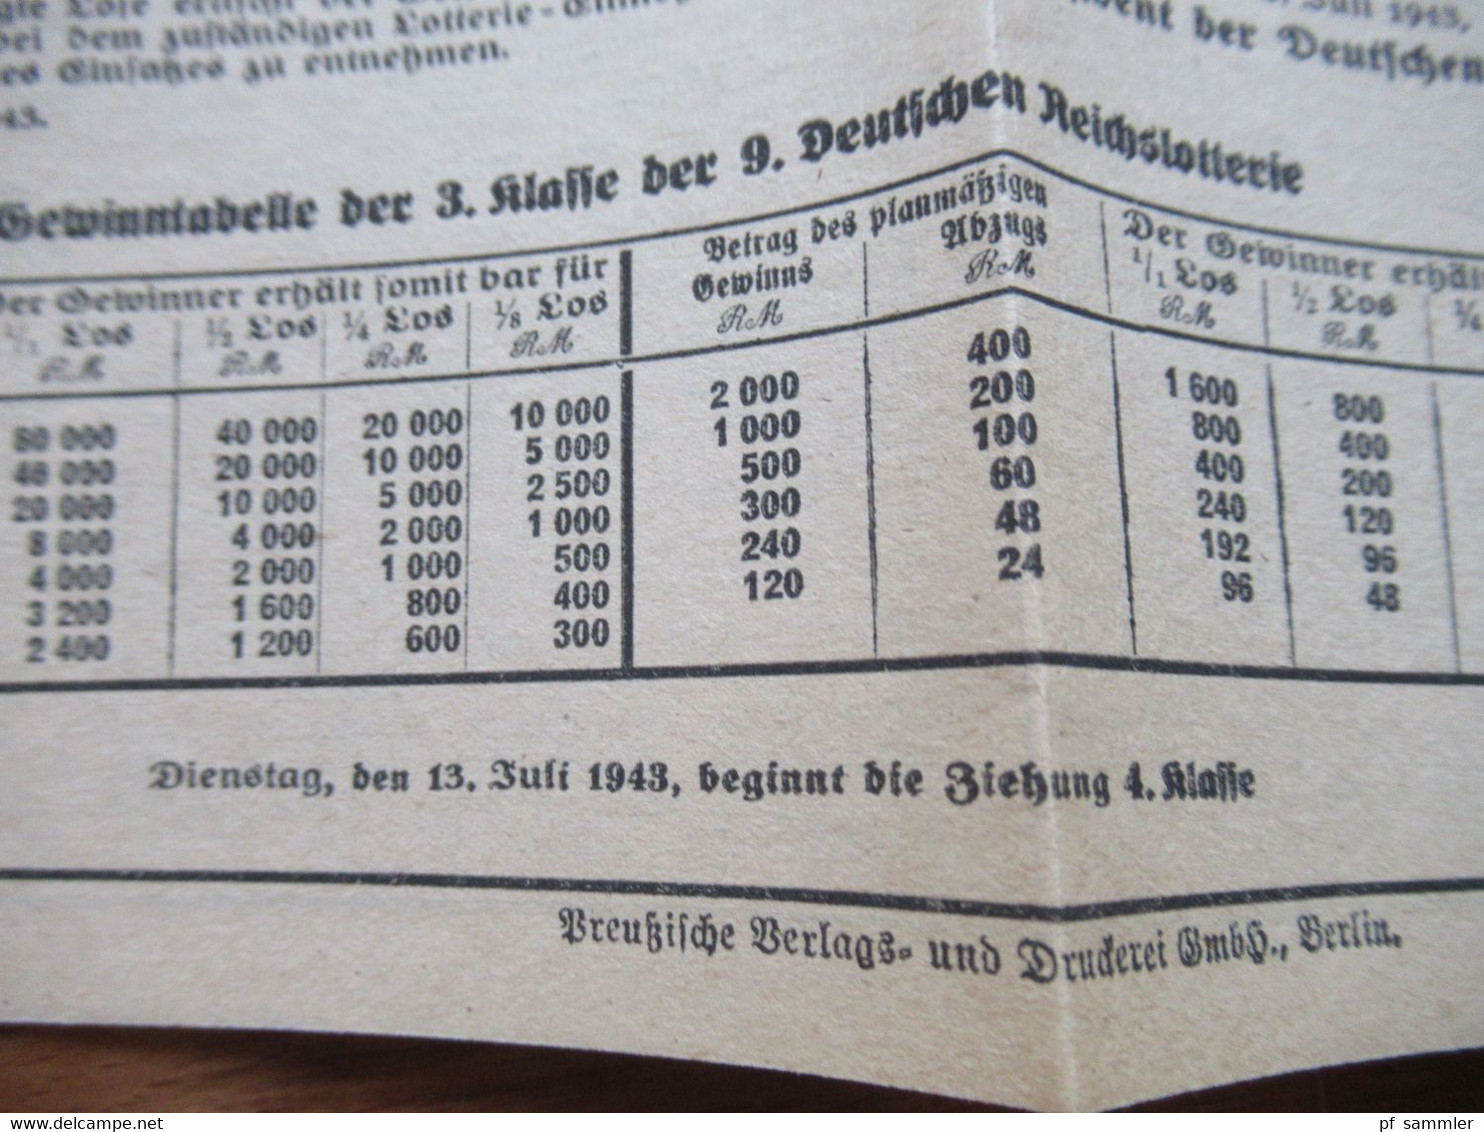 3.Reich 1943 Faltblatt Deutsche Reichslotterie Amtliche Gewinnliste der 3. Klasse der 9. Reichslotterie